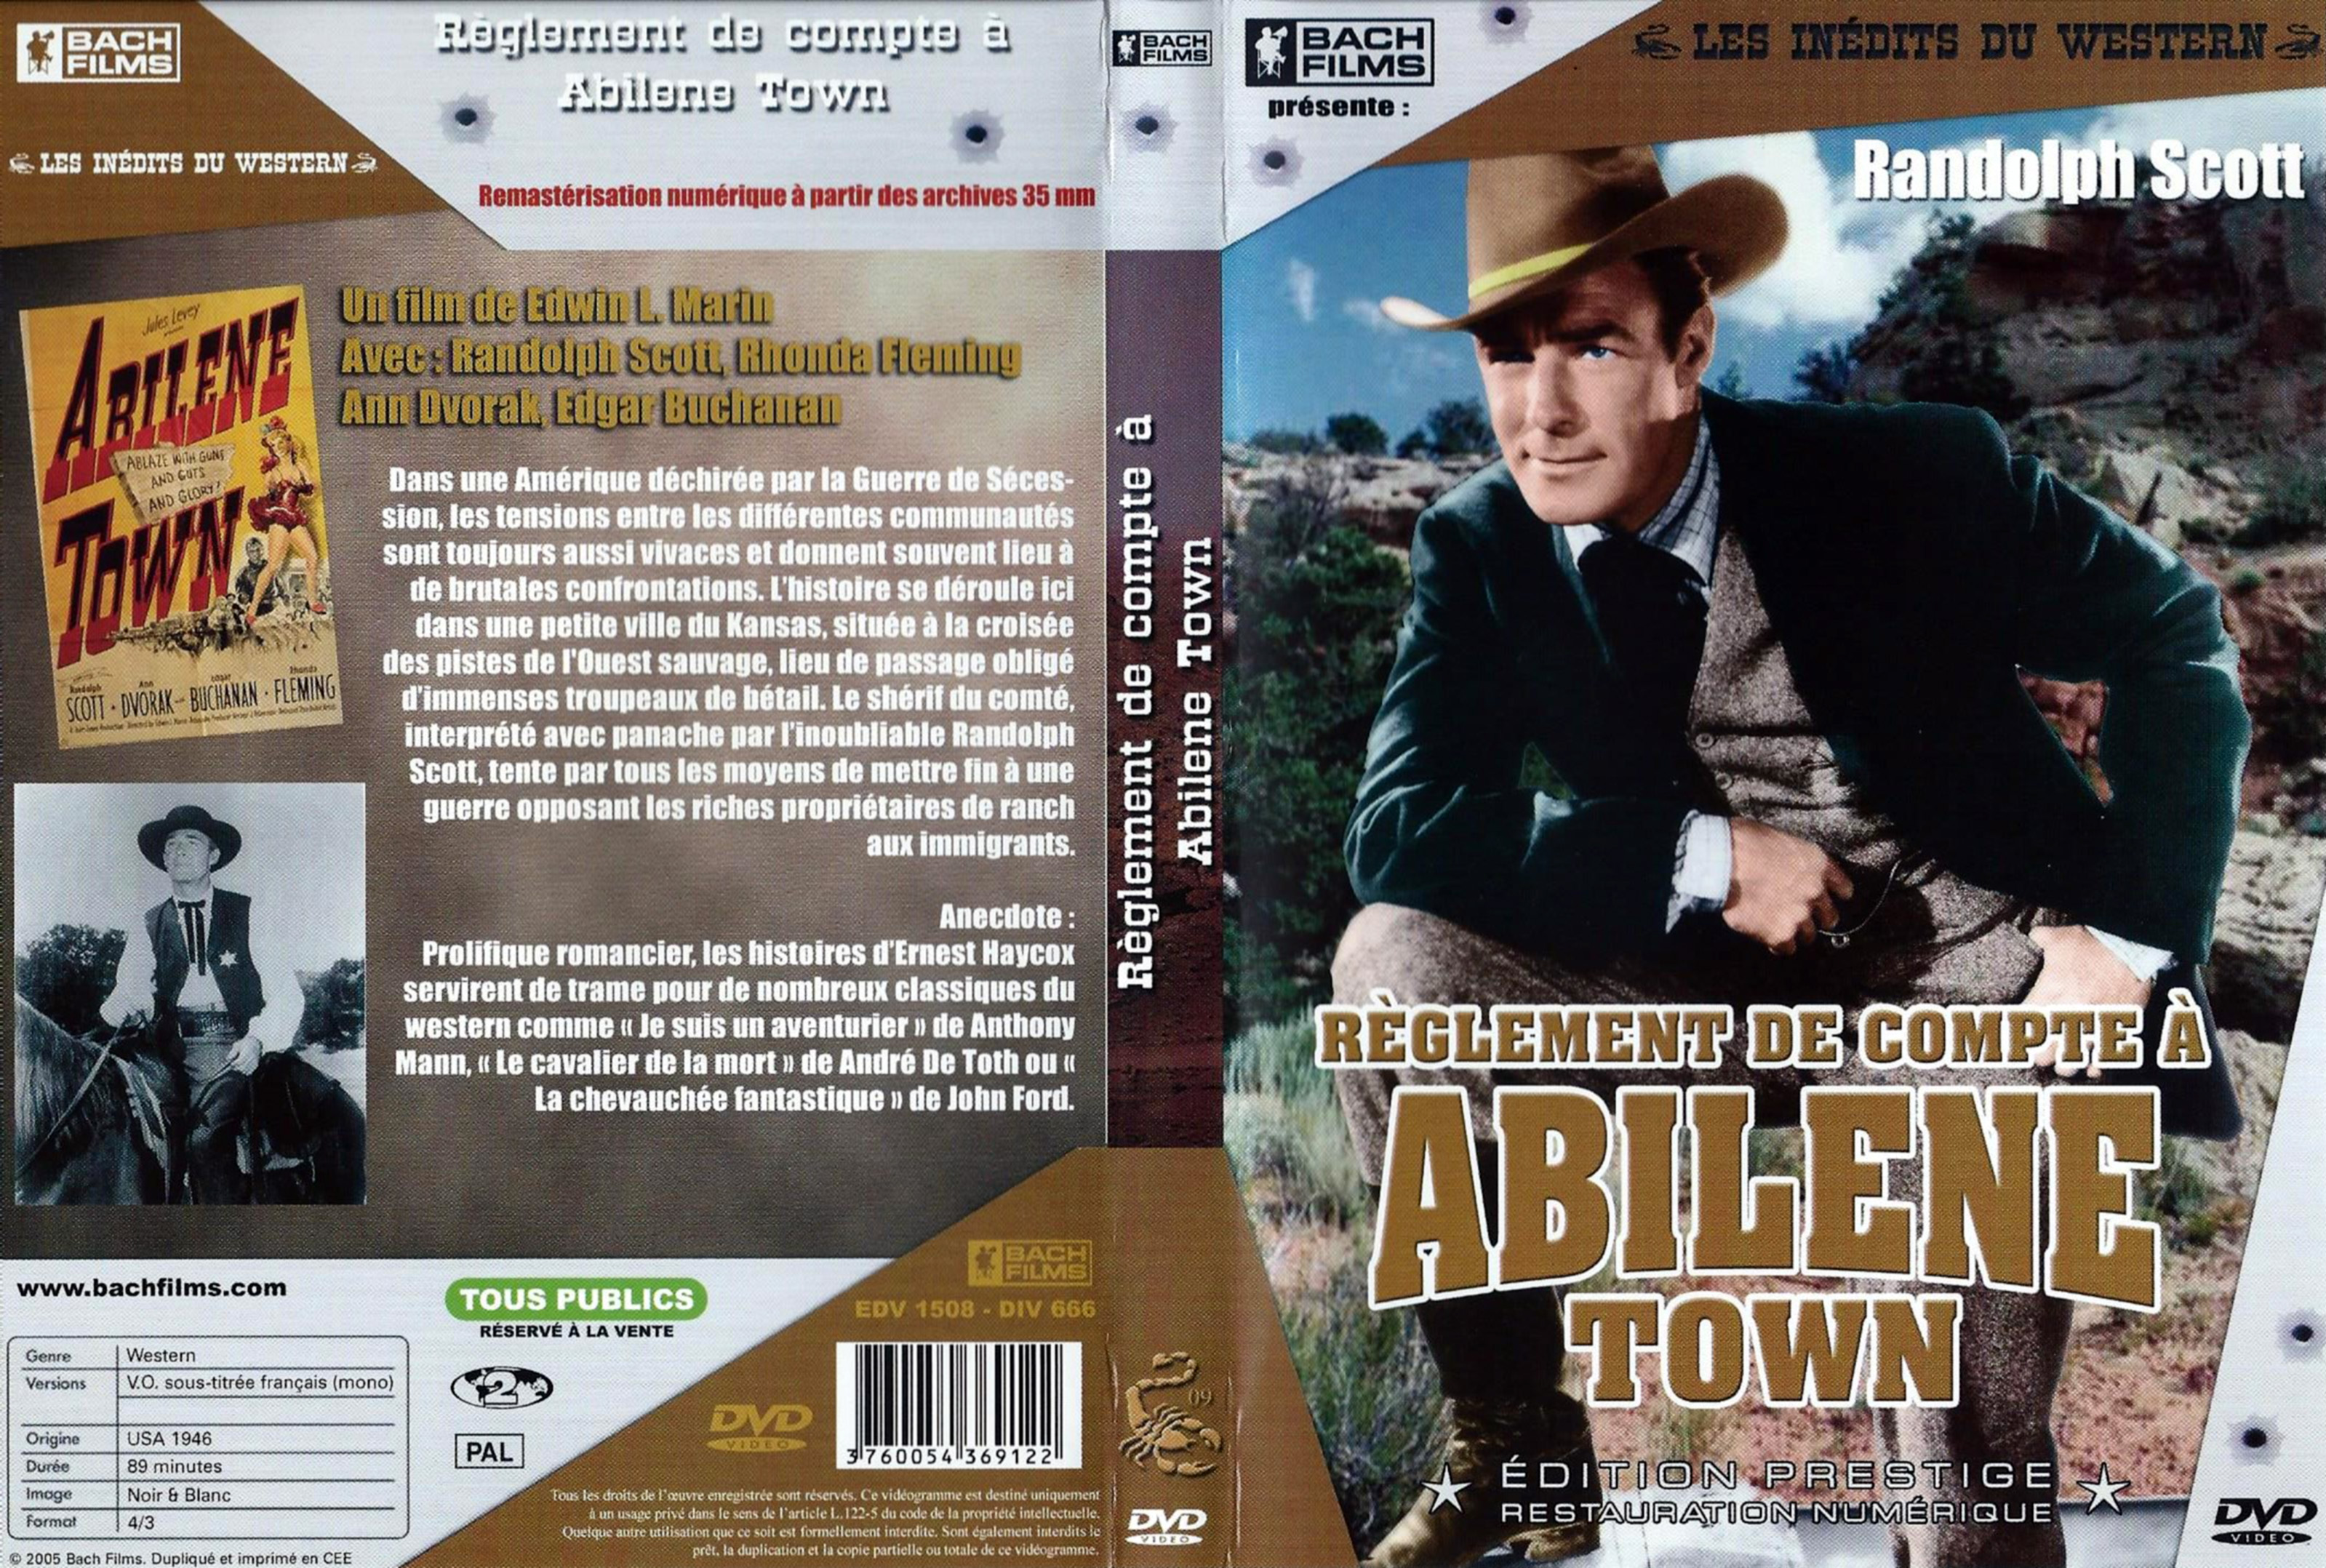 Jaquette DVD Rglements de compte  Abilene Town